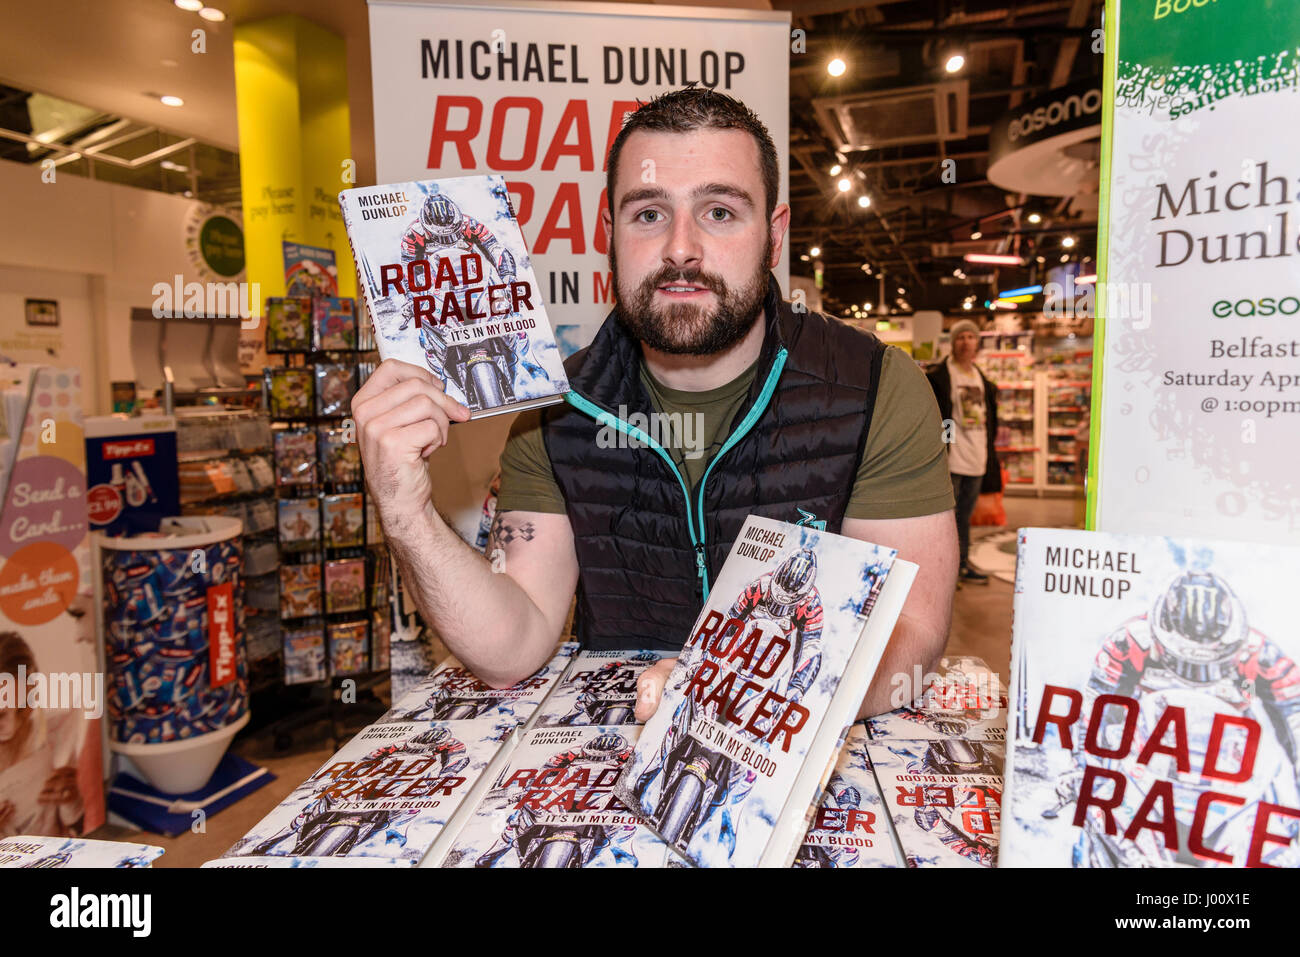 Belfast, Irlande du Nord. 08 Apr 2017 - Moto Racer Michael Dunlop signe des copies de son nouveau livre 'Road Racer : c'est dans mon sang' à motifs book shop. Banque D'Images